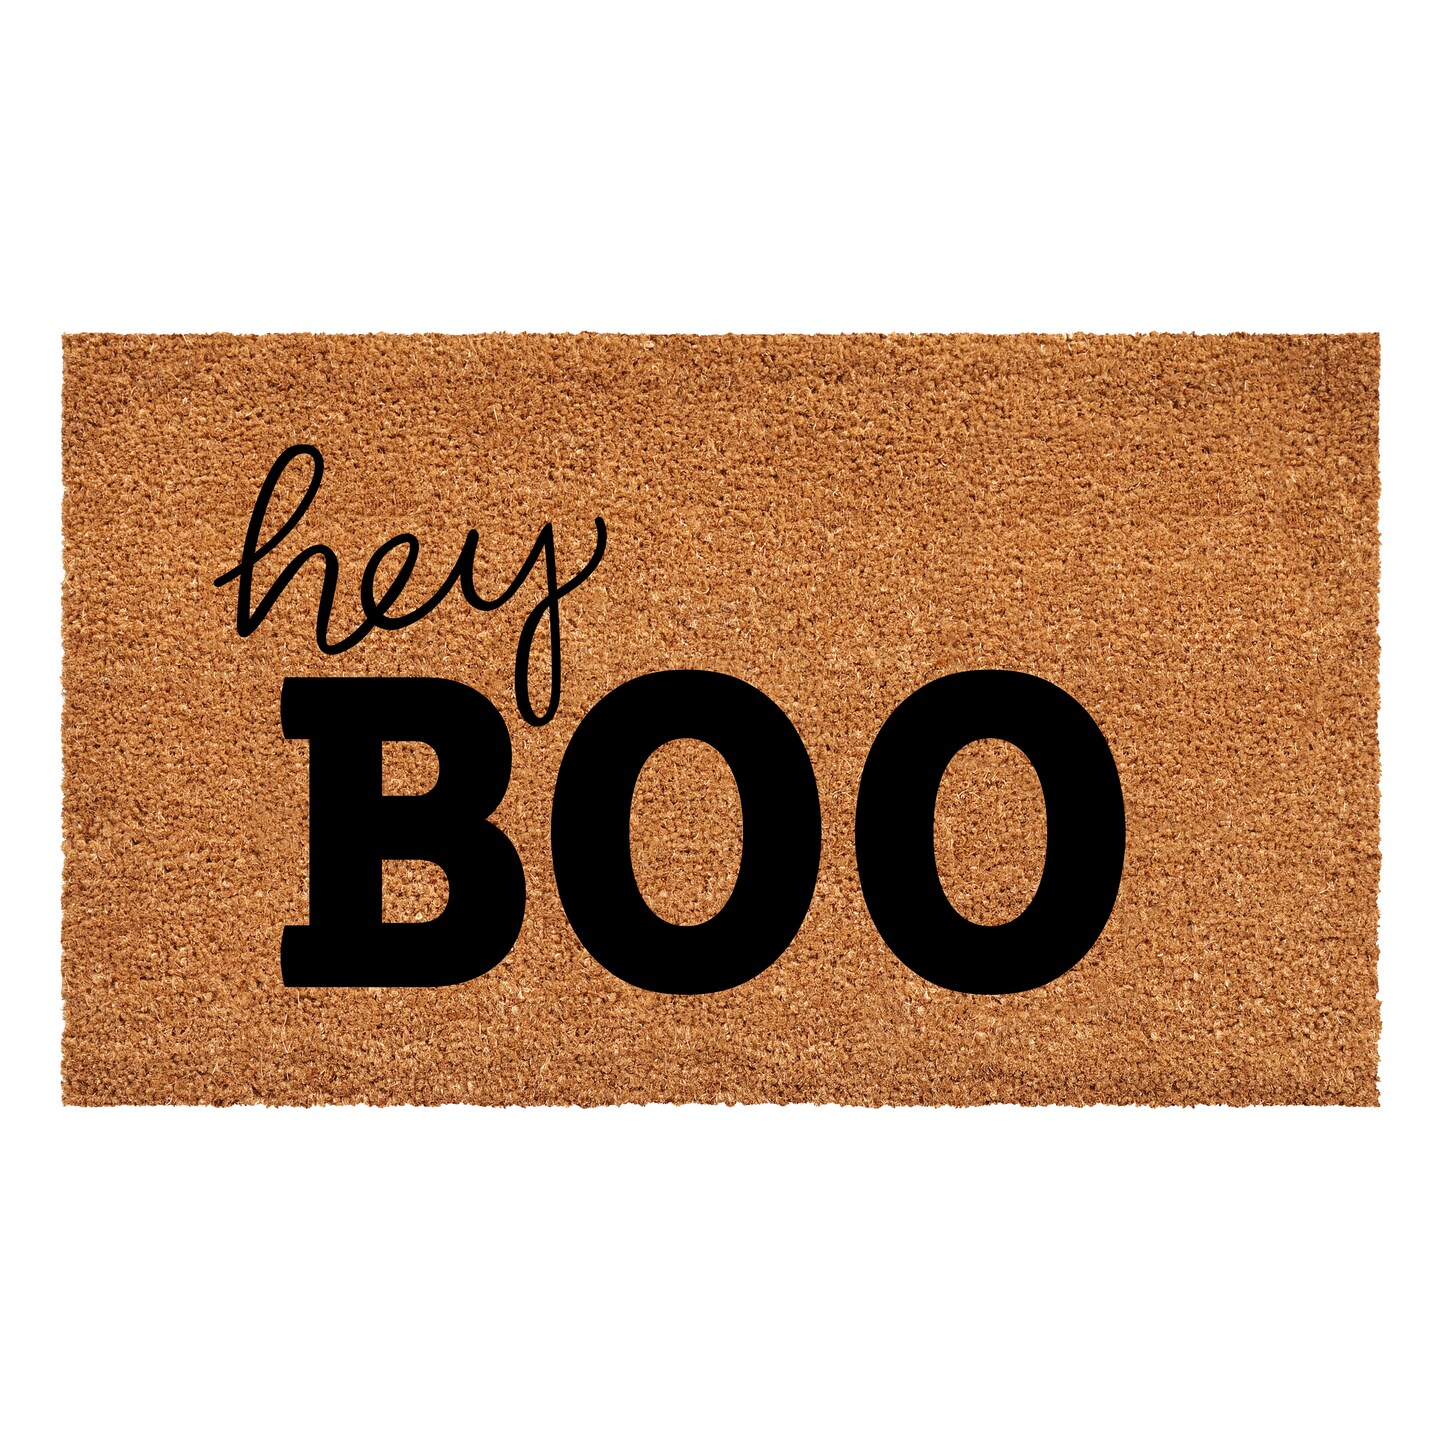 Hey Boo Doormat